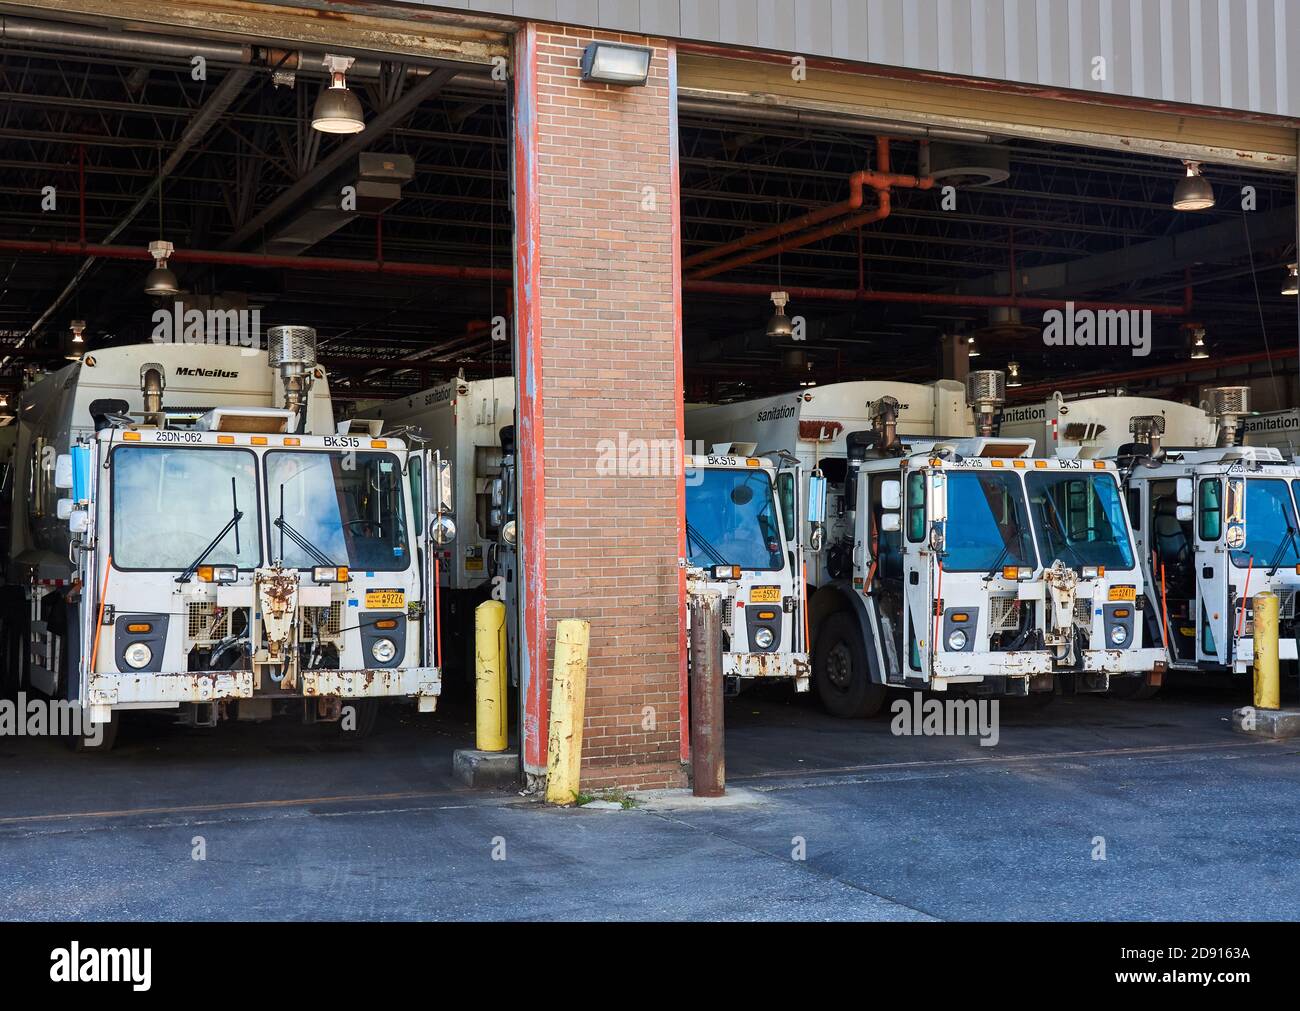 Diese Müllwagen der Sanitation Department werden in einer Garage in Sunset Park, Brooklyn, NY, gelagert, während sie nicht in Gebrauch sind. Stockfoto